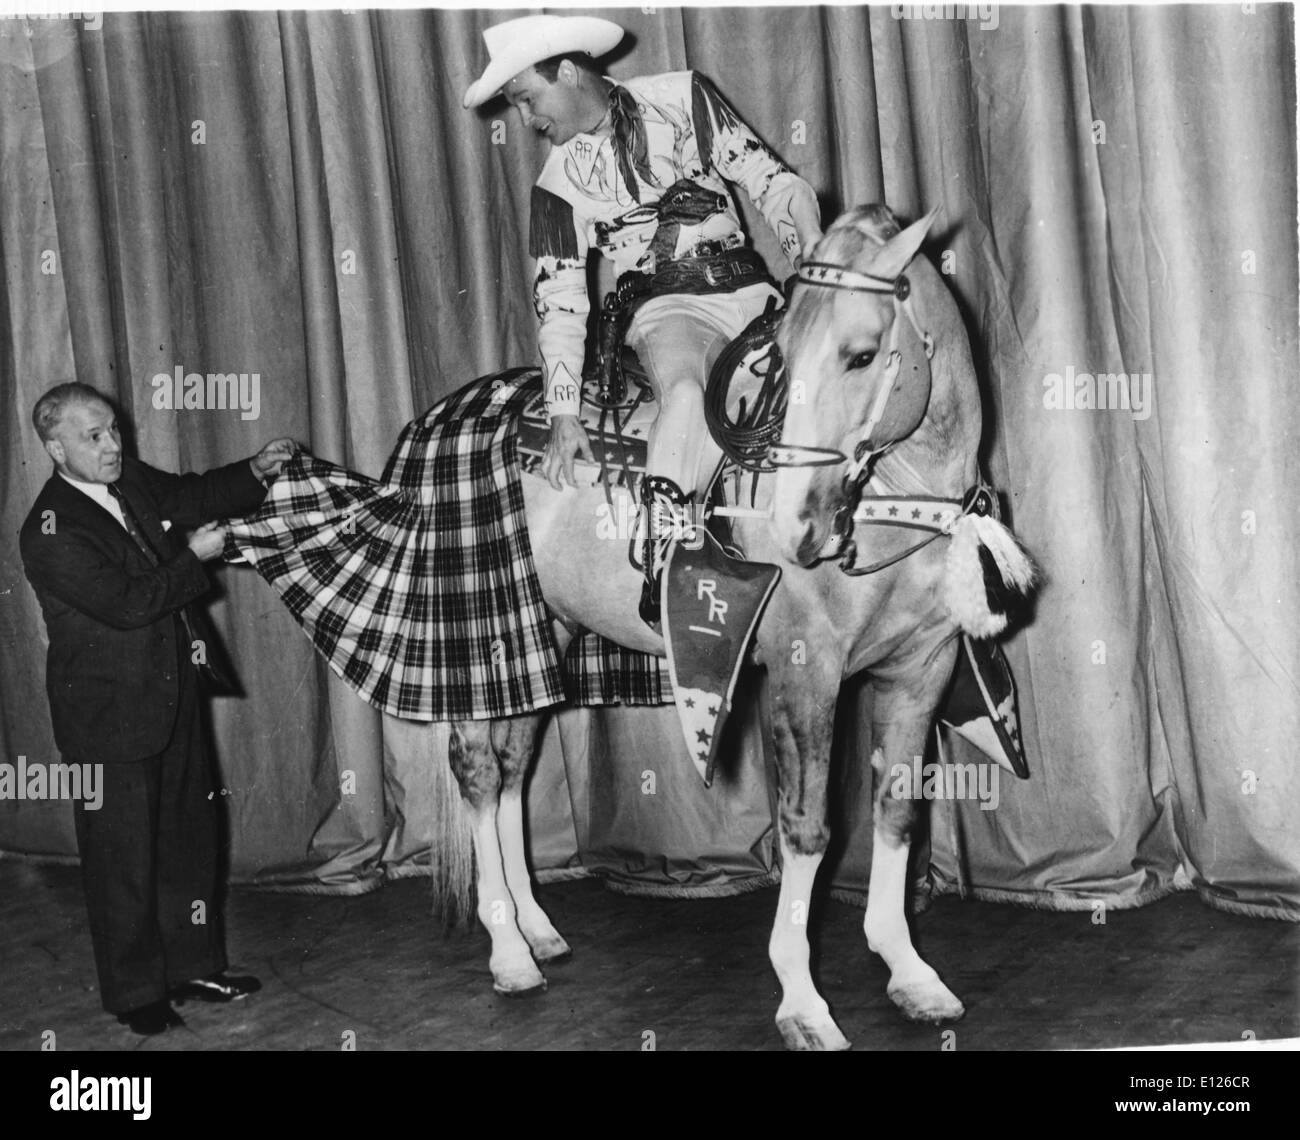 2. Januar 2007; Los Angeles, Kalifornien, USA; LEONARD FRANKLIN SLYE aka ROY ROGERS (5. November 1911 Ð 6. Juli 1998), der als Roy Rogers berühmt wurde, war ein Sänger und Schauspieler Cowboy. Er und seine dritte Frau Dale Evans, seine goldene Palomino TRIGGER und seine Schäferhund Kugel wurden vorgestellt, in über hundert Filmen und The Roy Rogers zeigen die neun Jahre, bevor er zum Fernsehen von 1951 bis 1964 im Radio lief. Seine Produktionen enthalten in der Regel zwei Sidekicks, Pat Brady (Wer einen Jeep, genannt "Nellybelle" fuhr) und die schrullige Bushwhacker Gabby Hayes. Roys Spitzname war "König der Cowboys" Stockfoto